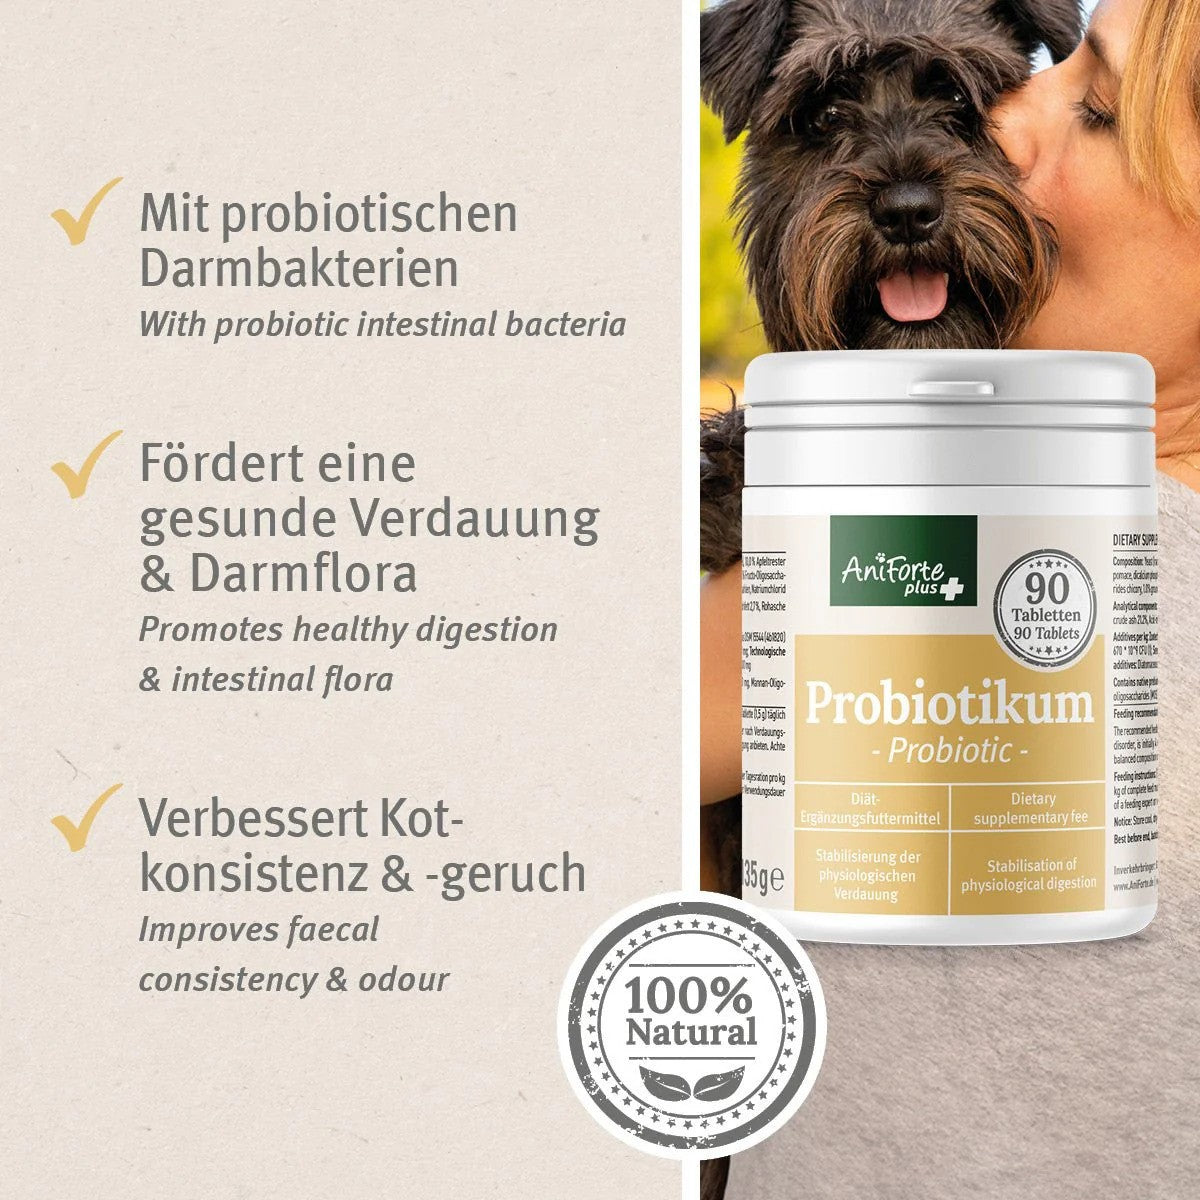 AniForte® plus Probiotikum Tabs, Probiotika und Präbiotika für den Hund, Verbesserung der Kotqualität, 90 Tabs